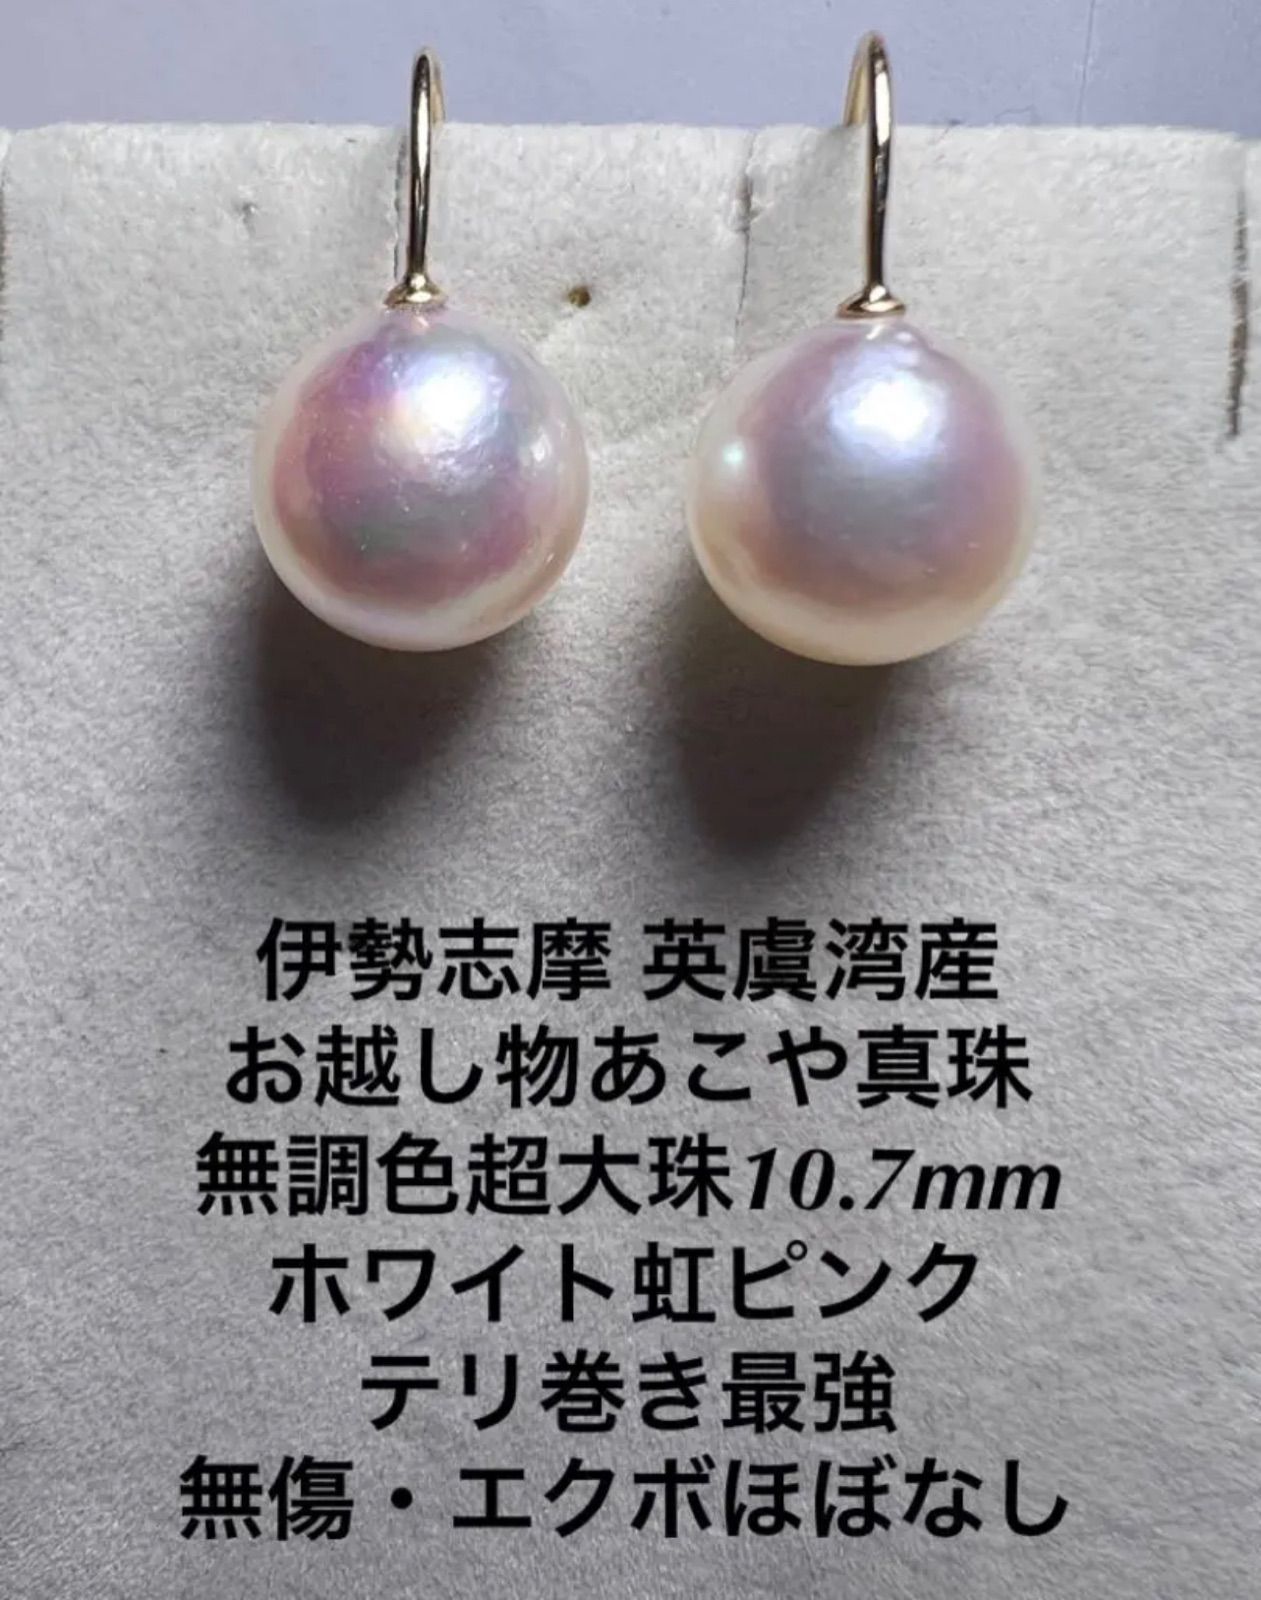 伊勢志摩 英虞湾産 越物あこや真珠 大珠8.5mm超稀少色ホワイトピンク